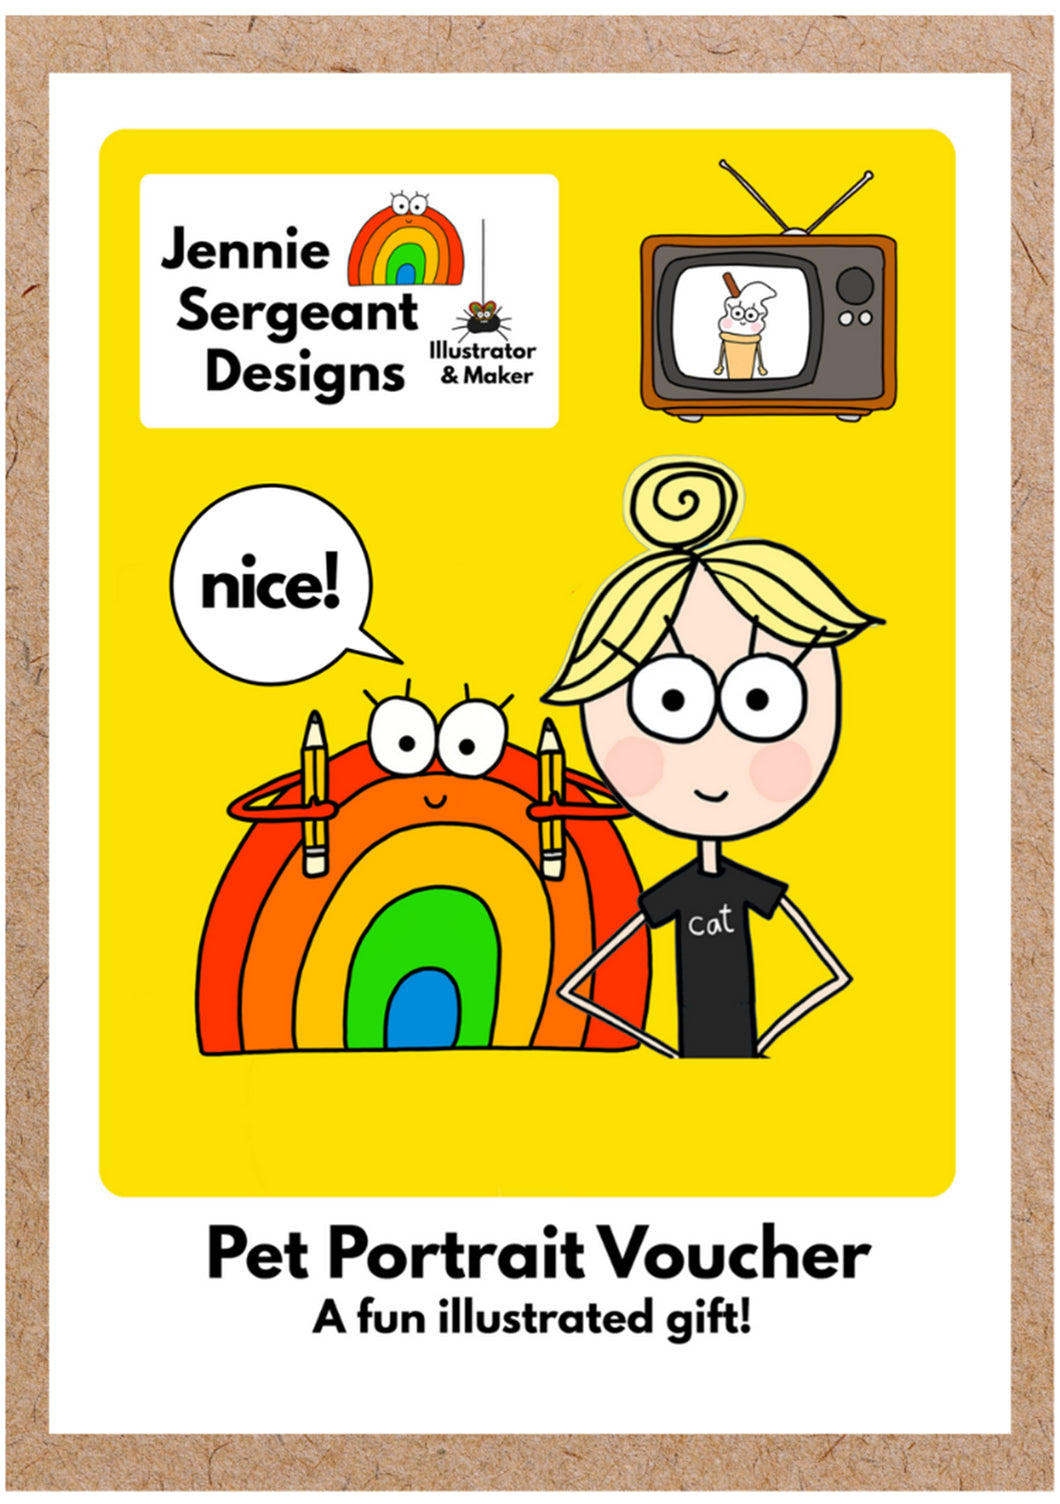 Pet Portrait Voucher - Personalised Pet drawings - Jennie Sergeant Designs